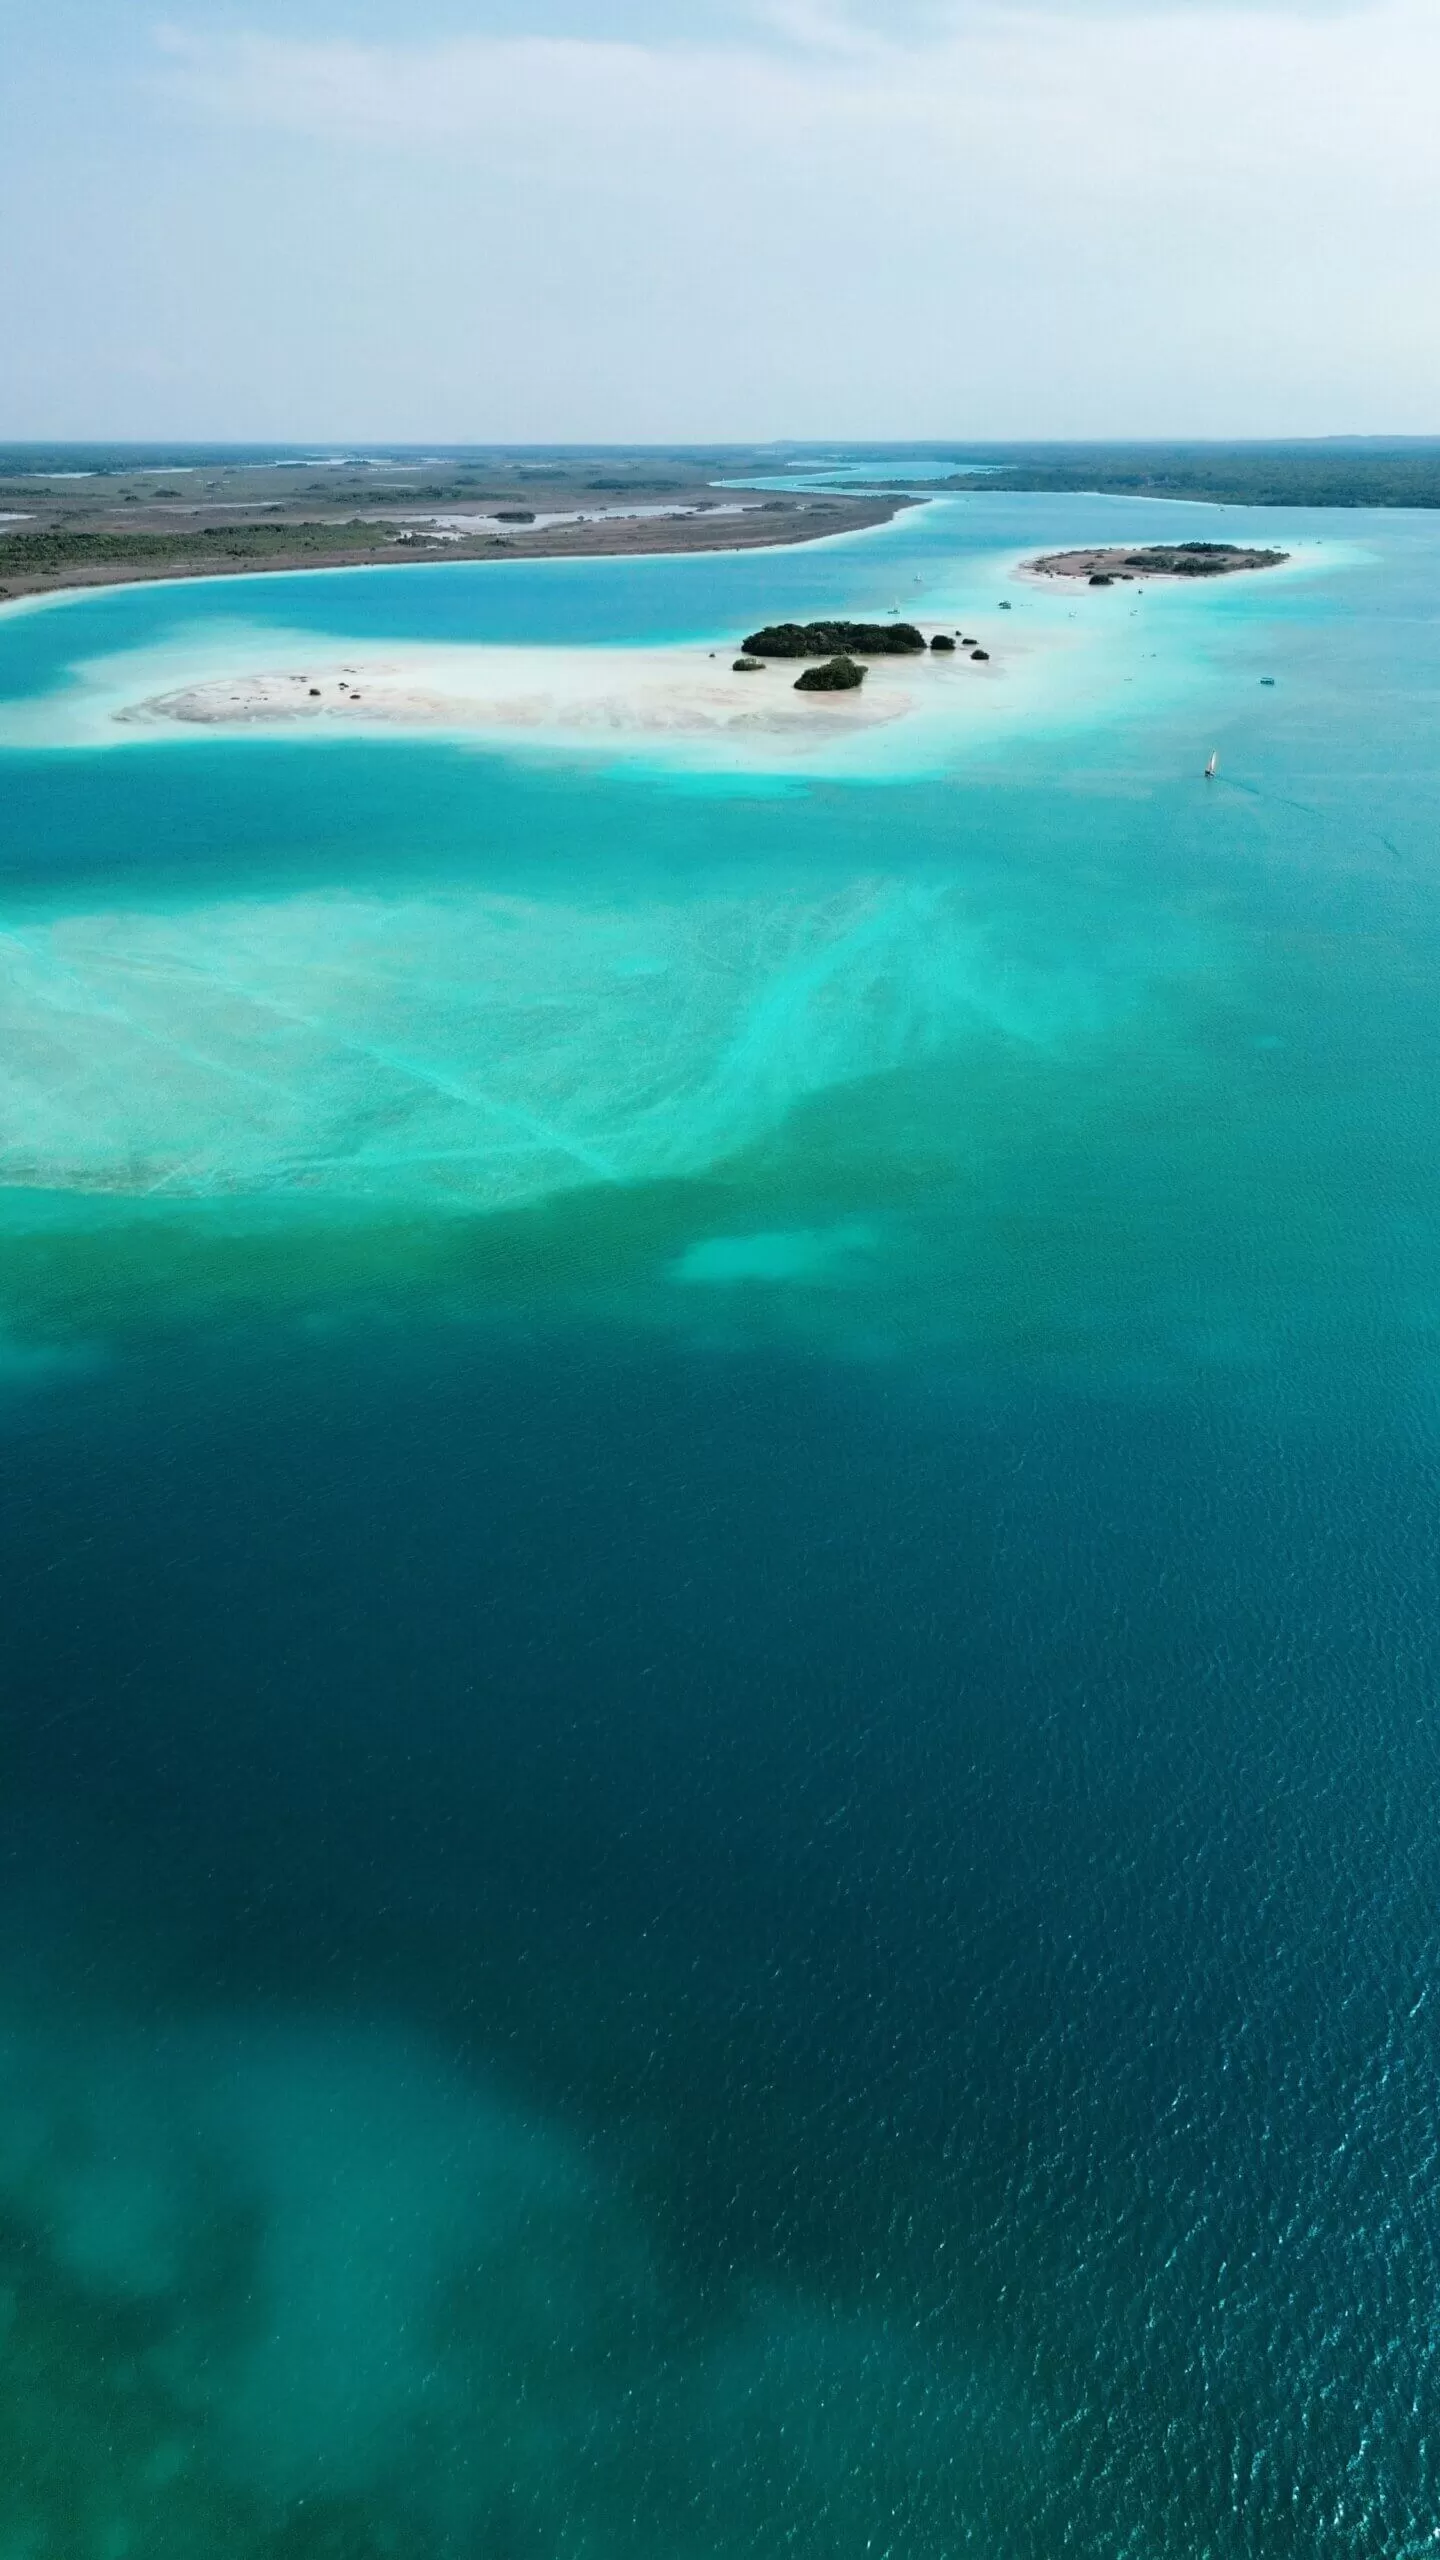 laguna bacalar vista desde drone. se ven en la laguna muchos tonos de azules y celestes